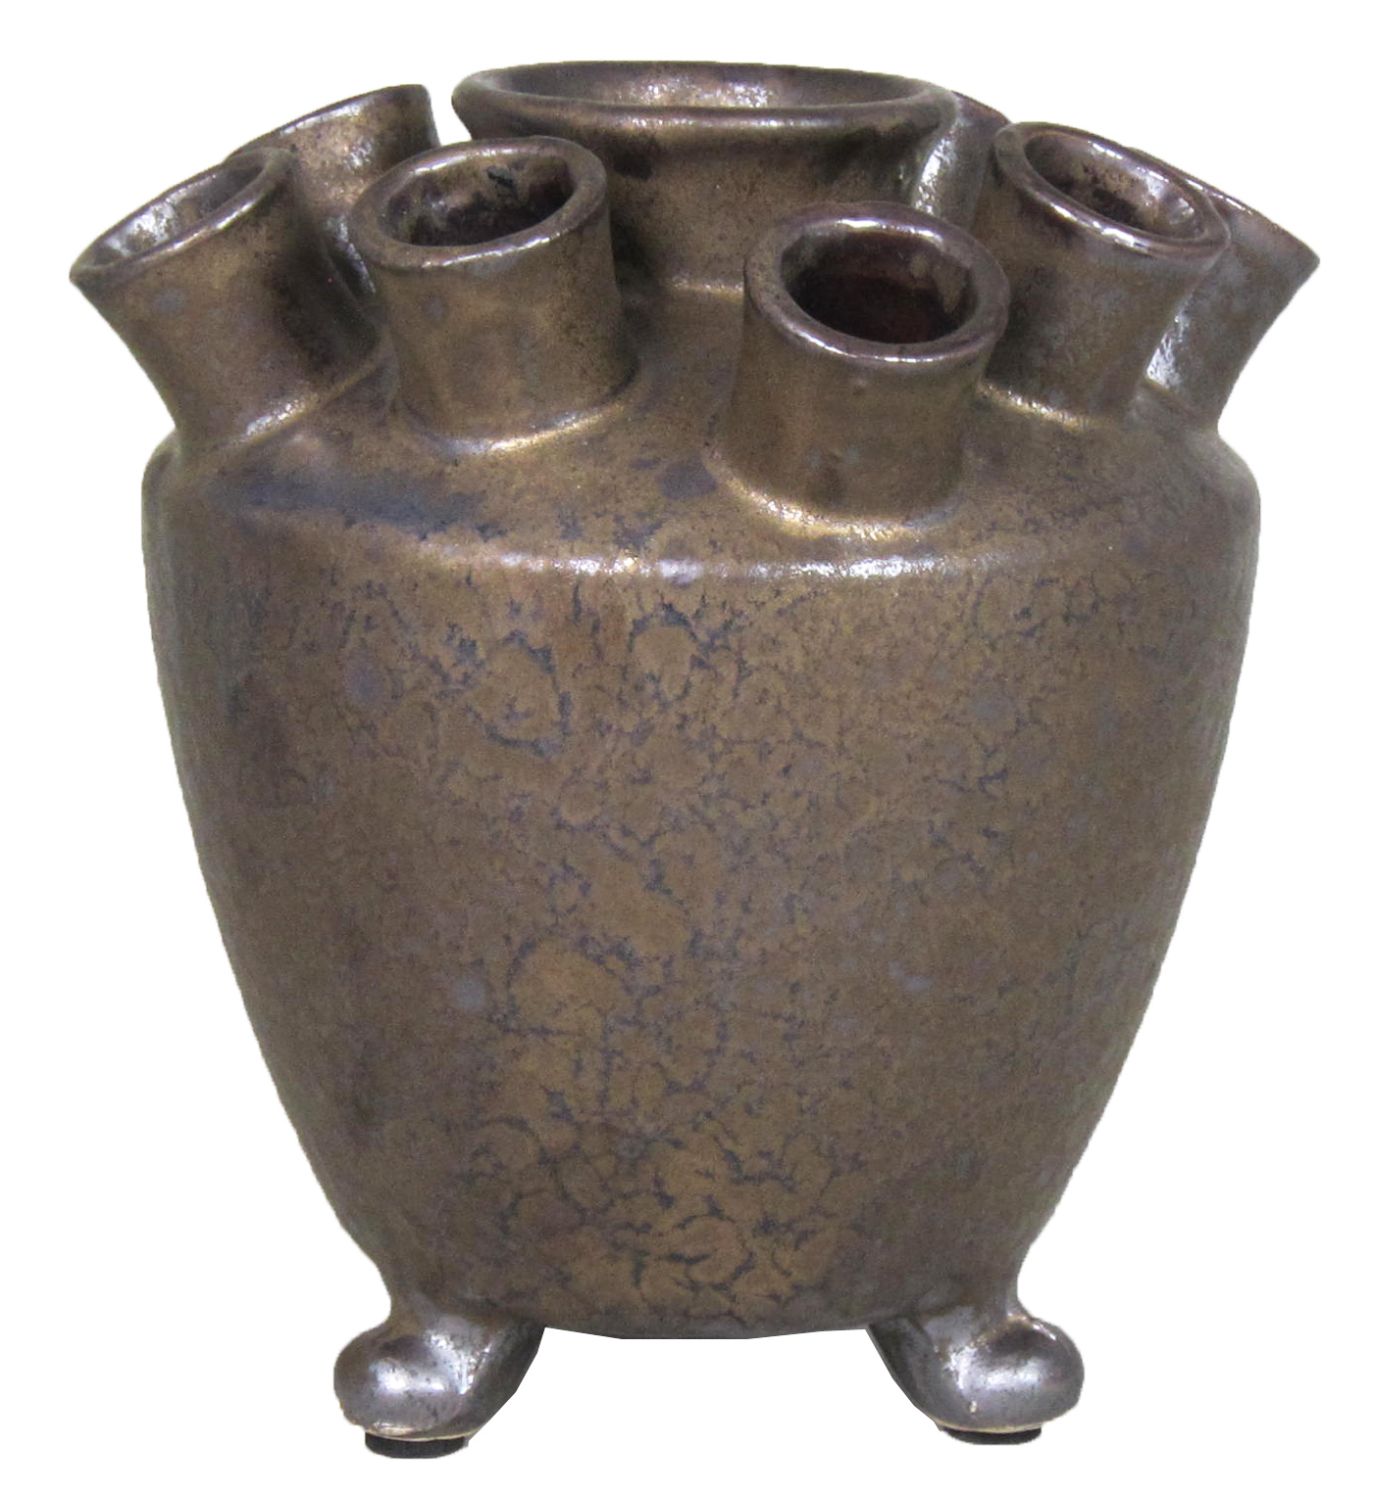 Originelle Vase aus Keramik OISIN mit 9 Öffnungen, bronze, 16cm, Ø14cm